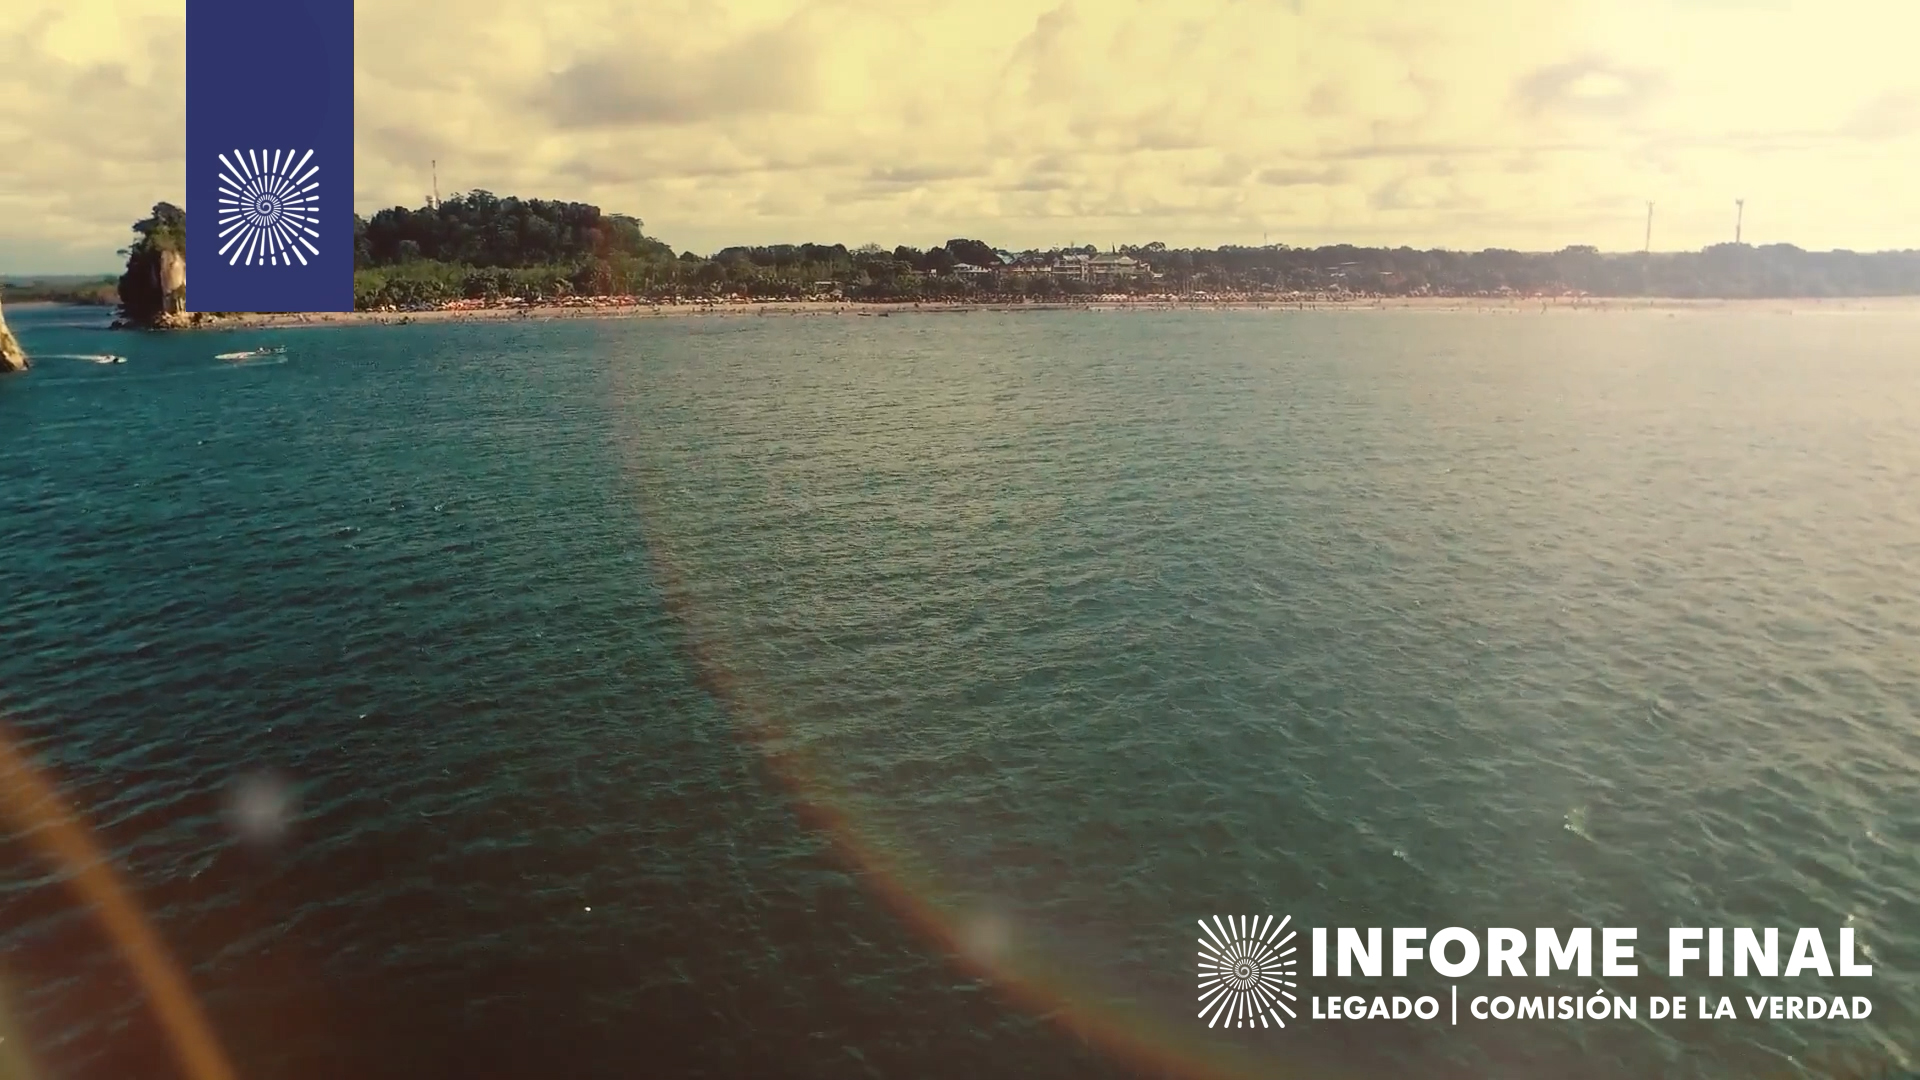 Playa con sombrillas observada desde mar adentro, el sol genera arcoiris en lente.